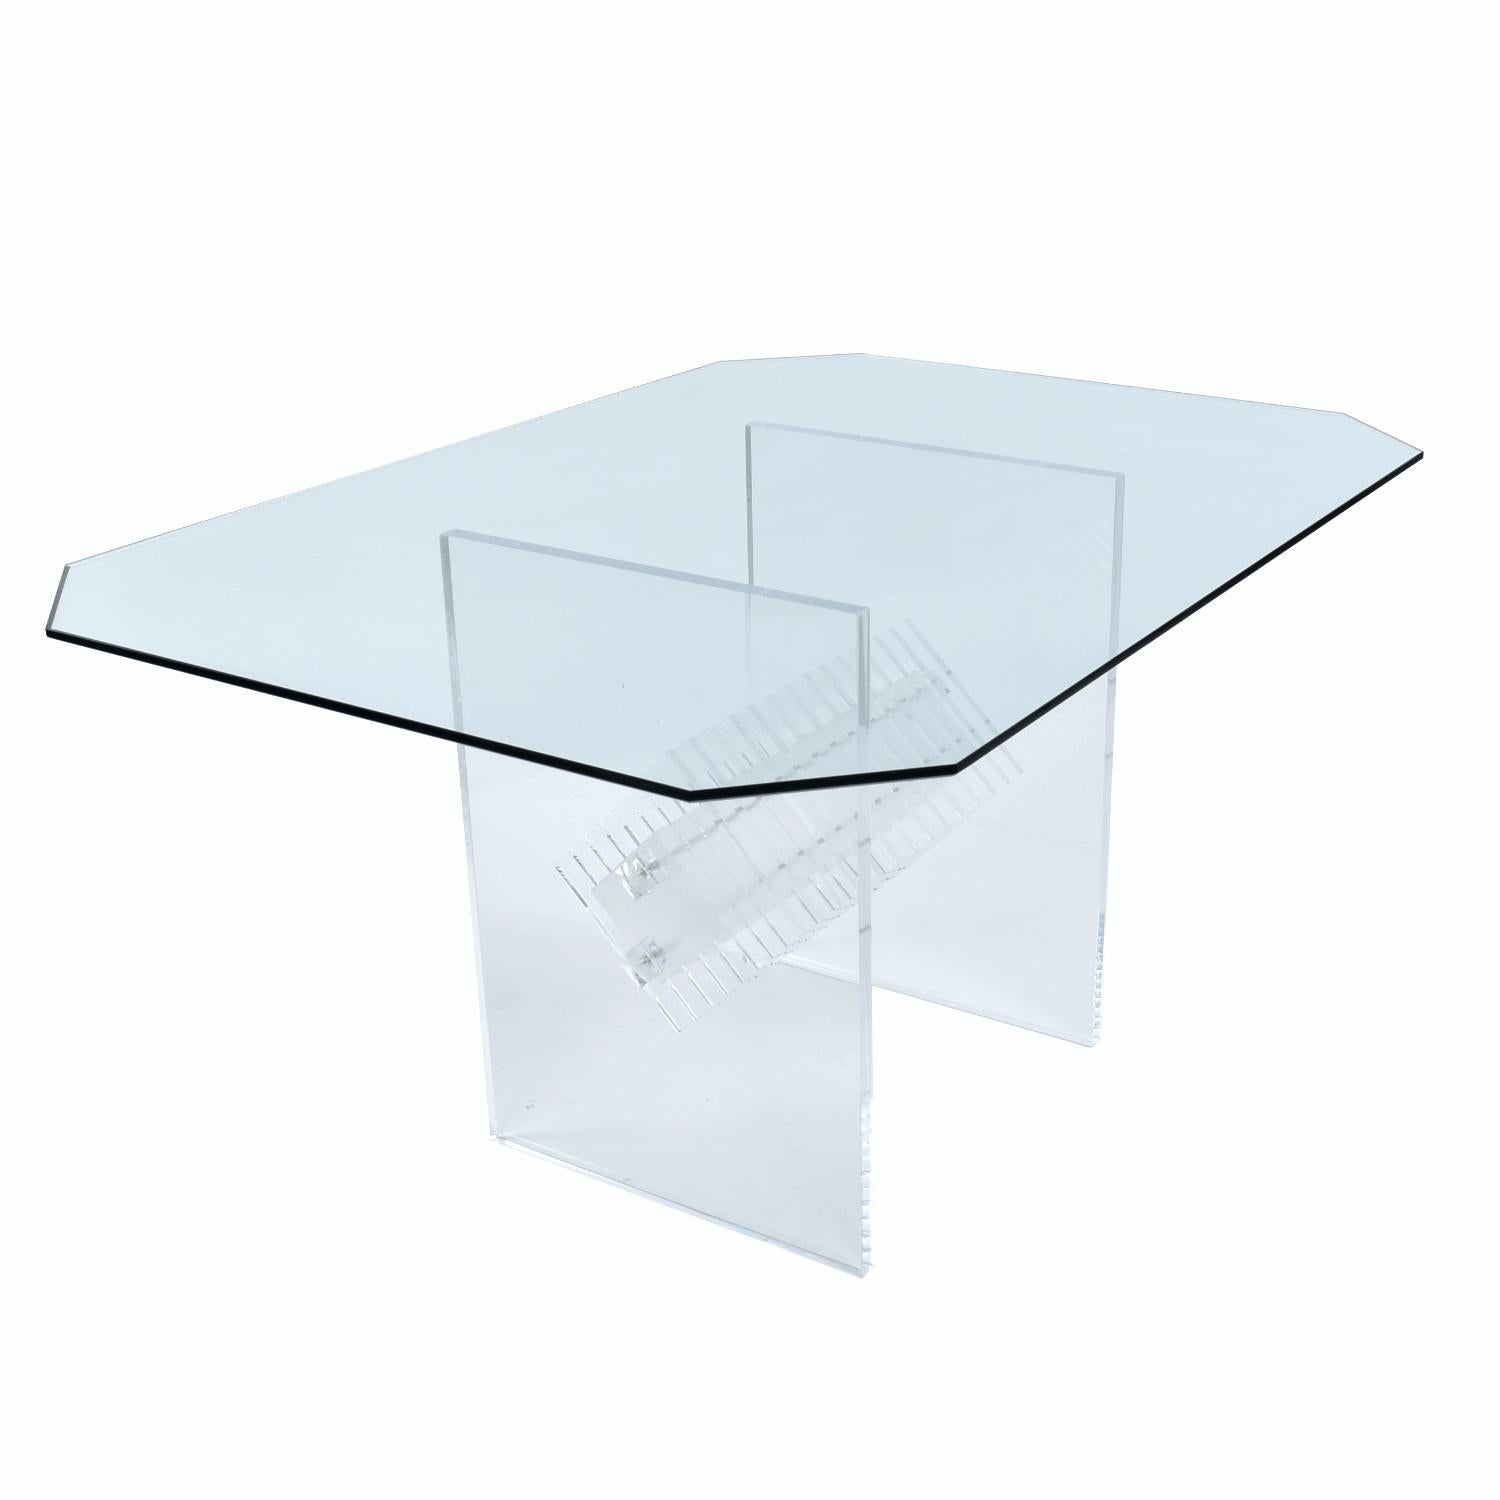 clear acrylic dining table